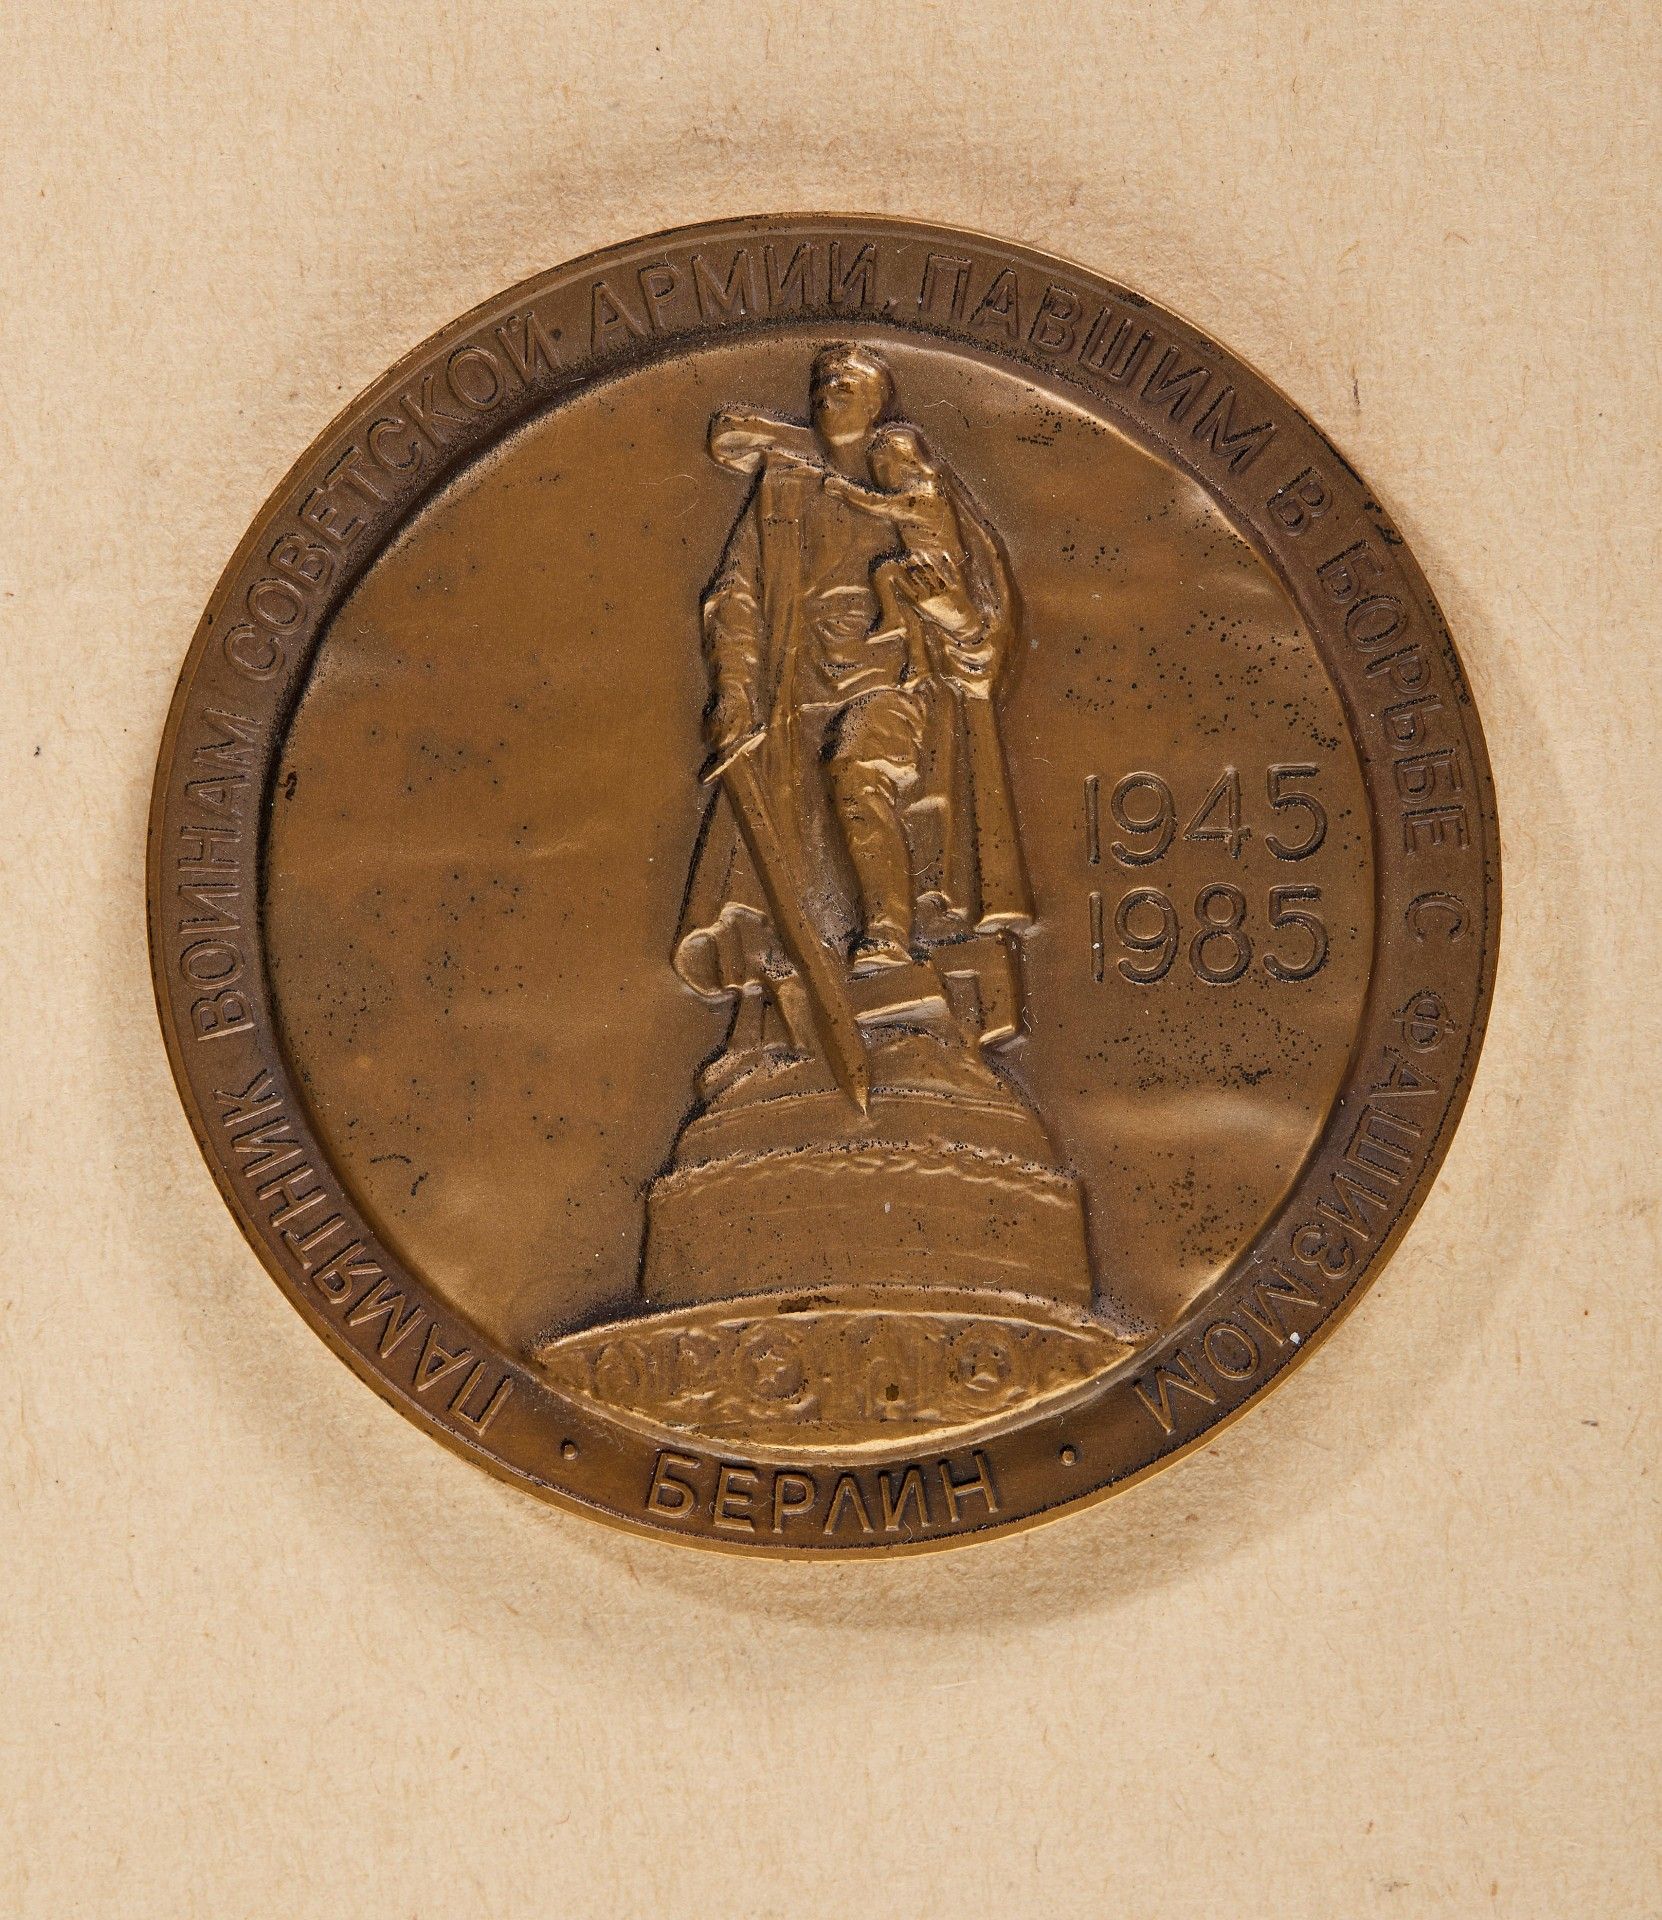 Erich Honecker - Medaille "Eure Heldentat ist unsterblich" 1945-1985